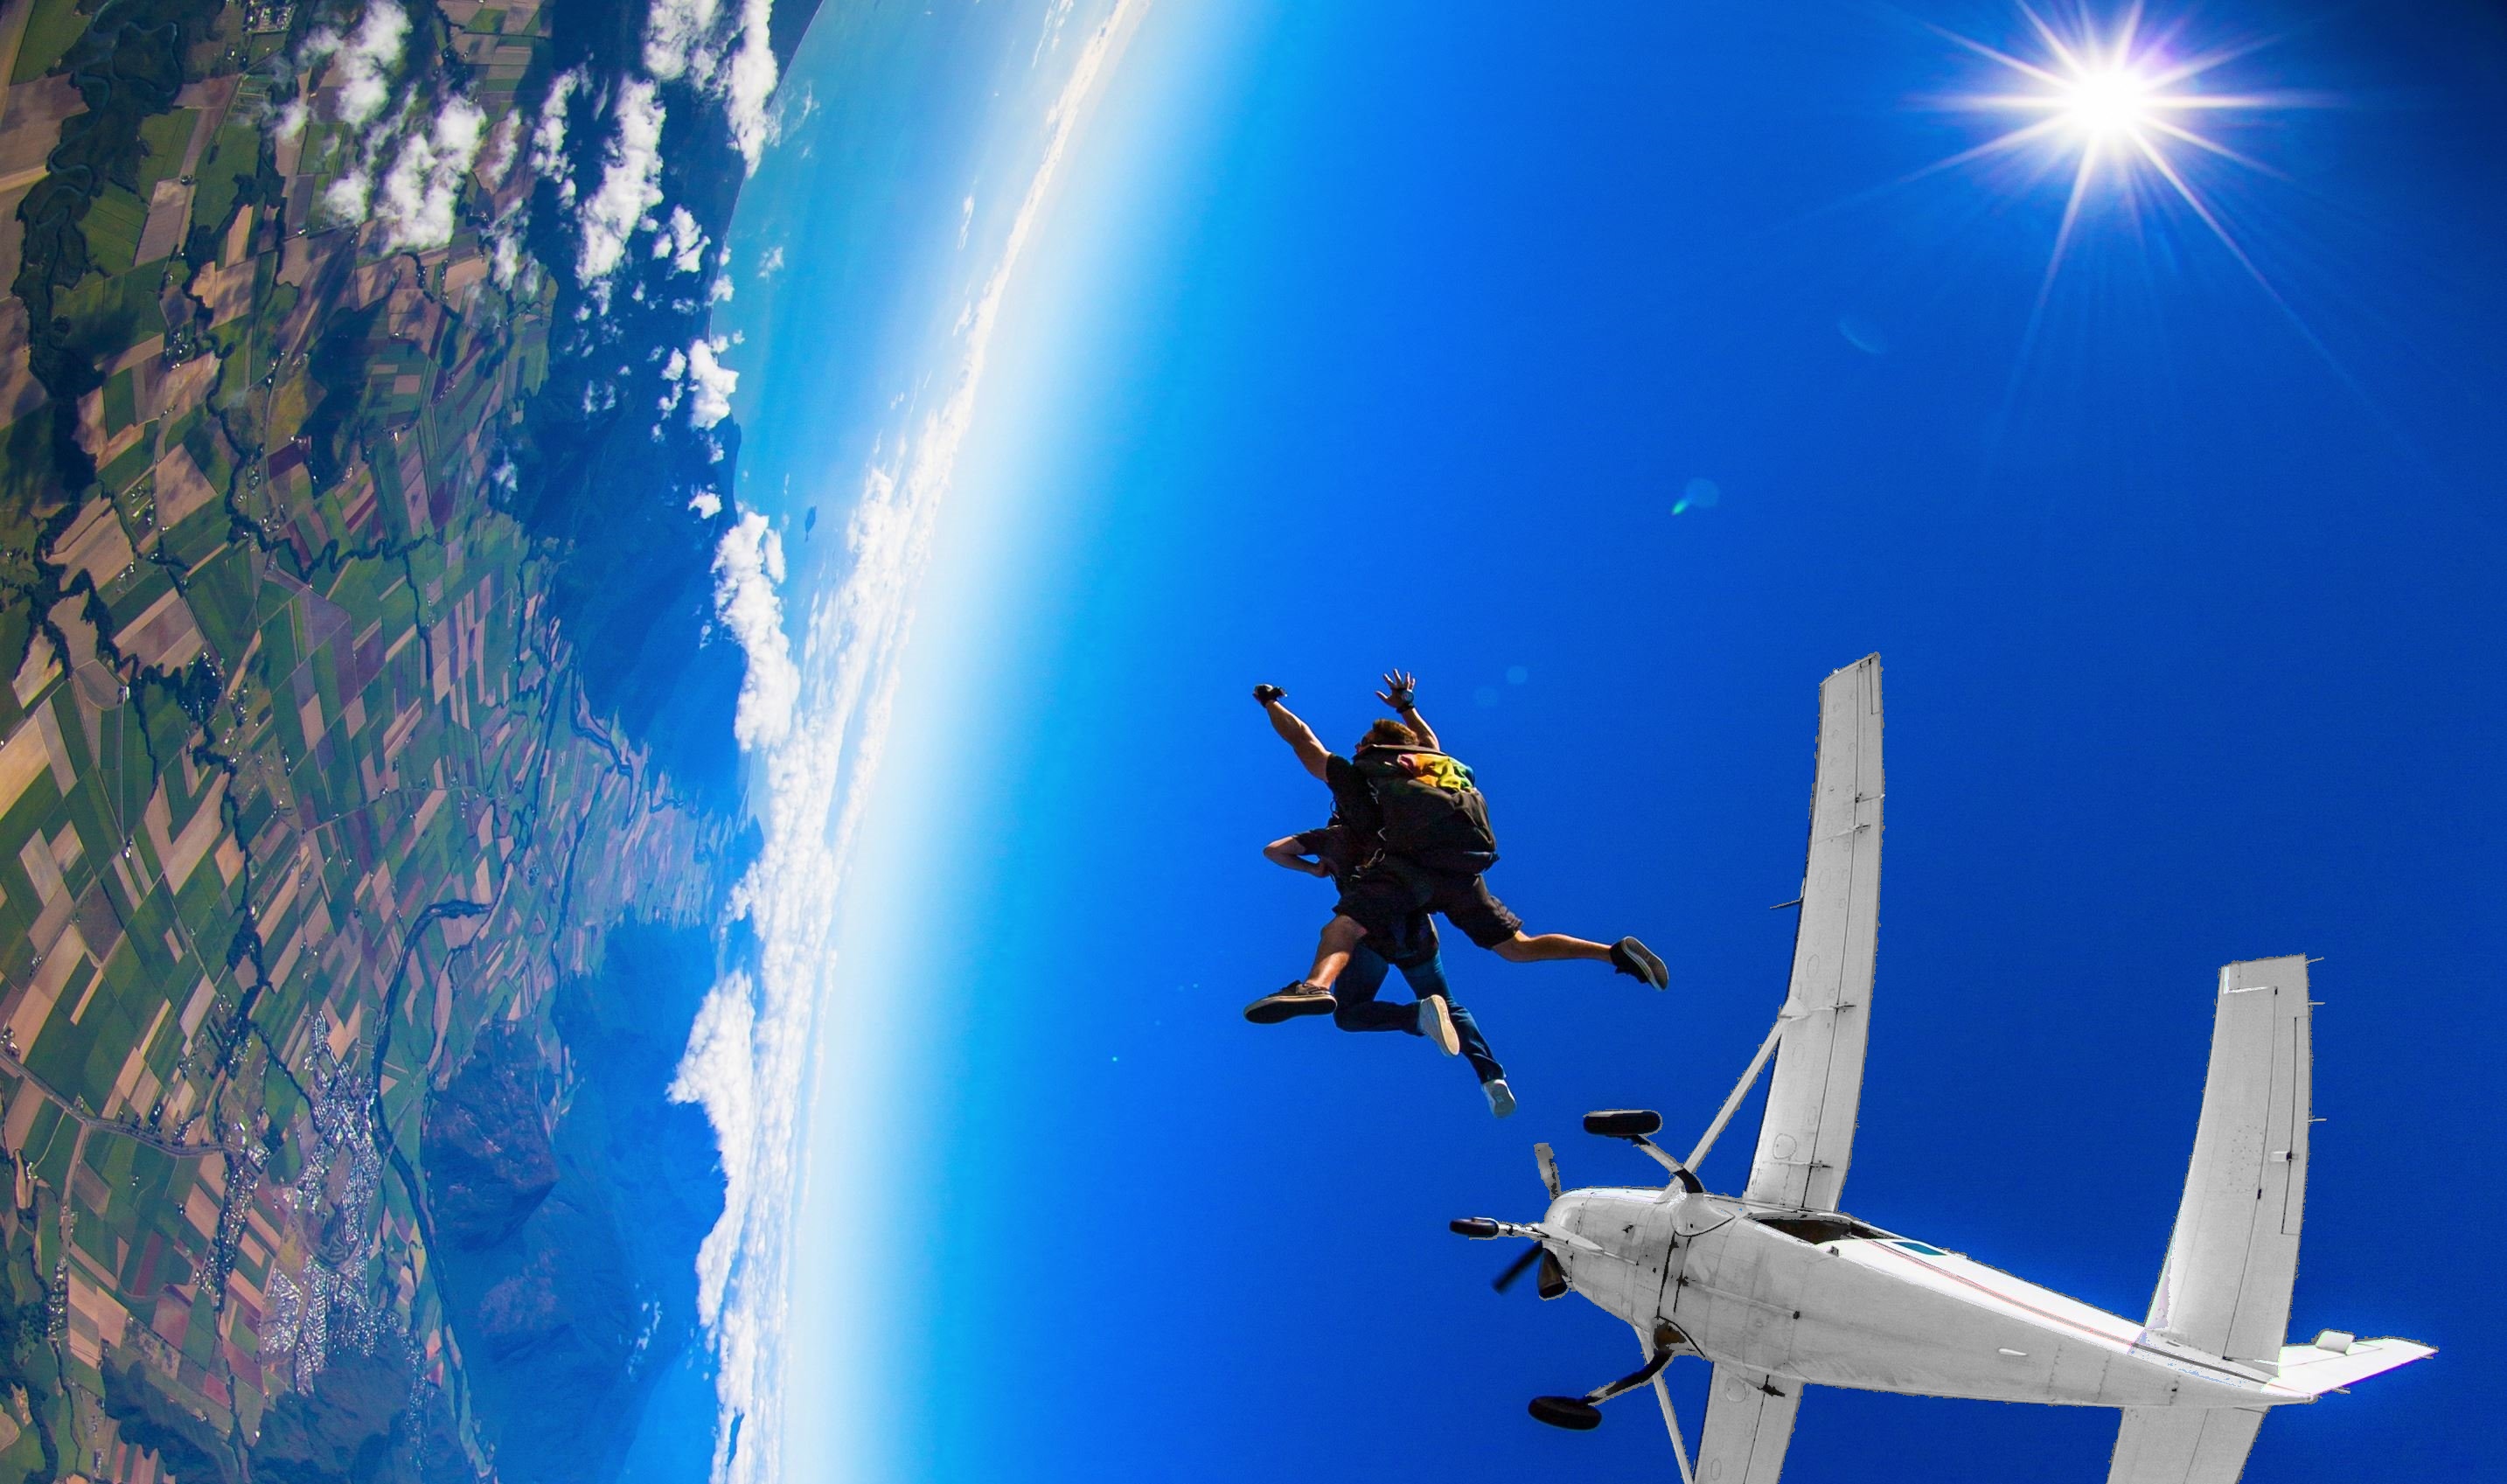 【澳洲春季特惠】澳洲跳伞Skydive预订攻略-搜狐